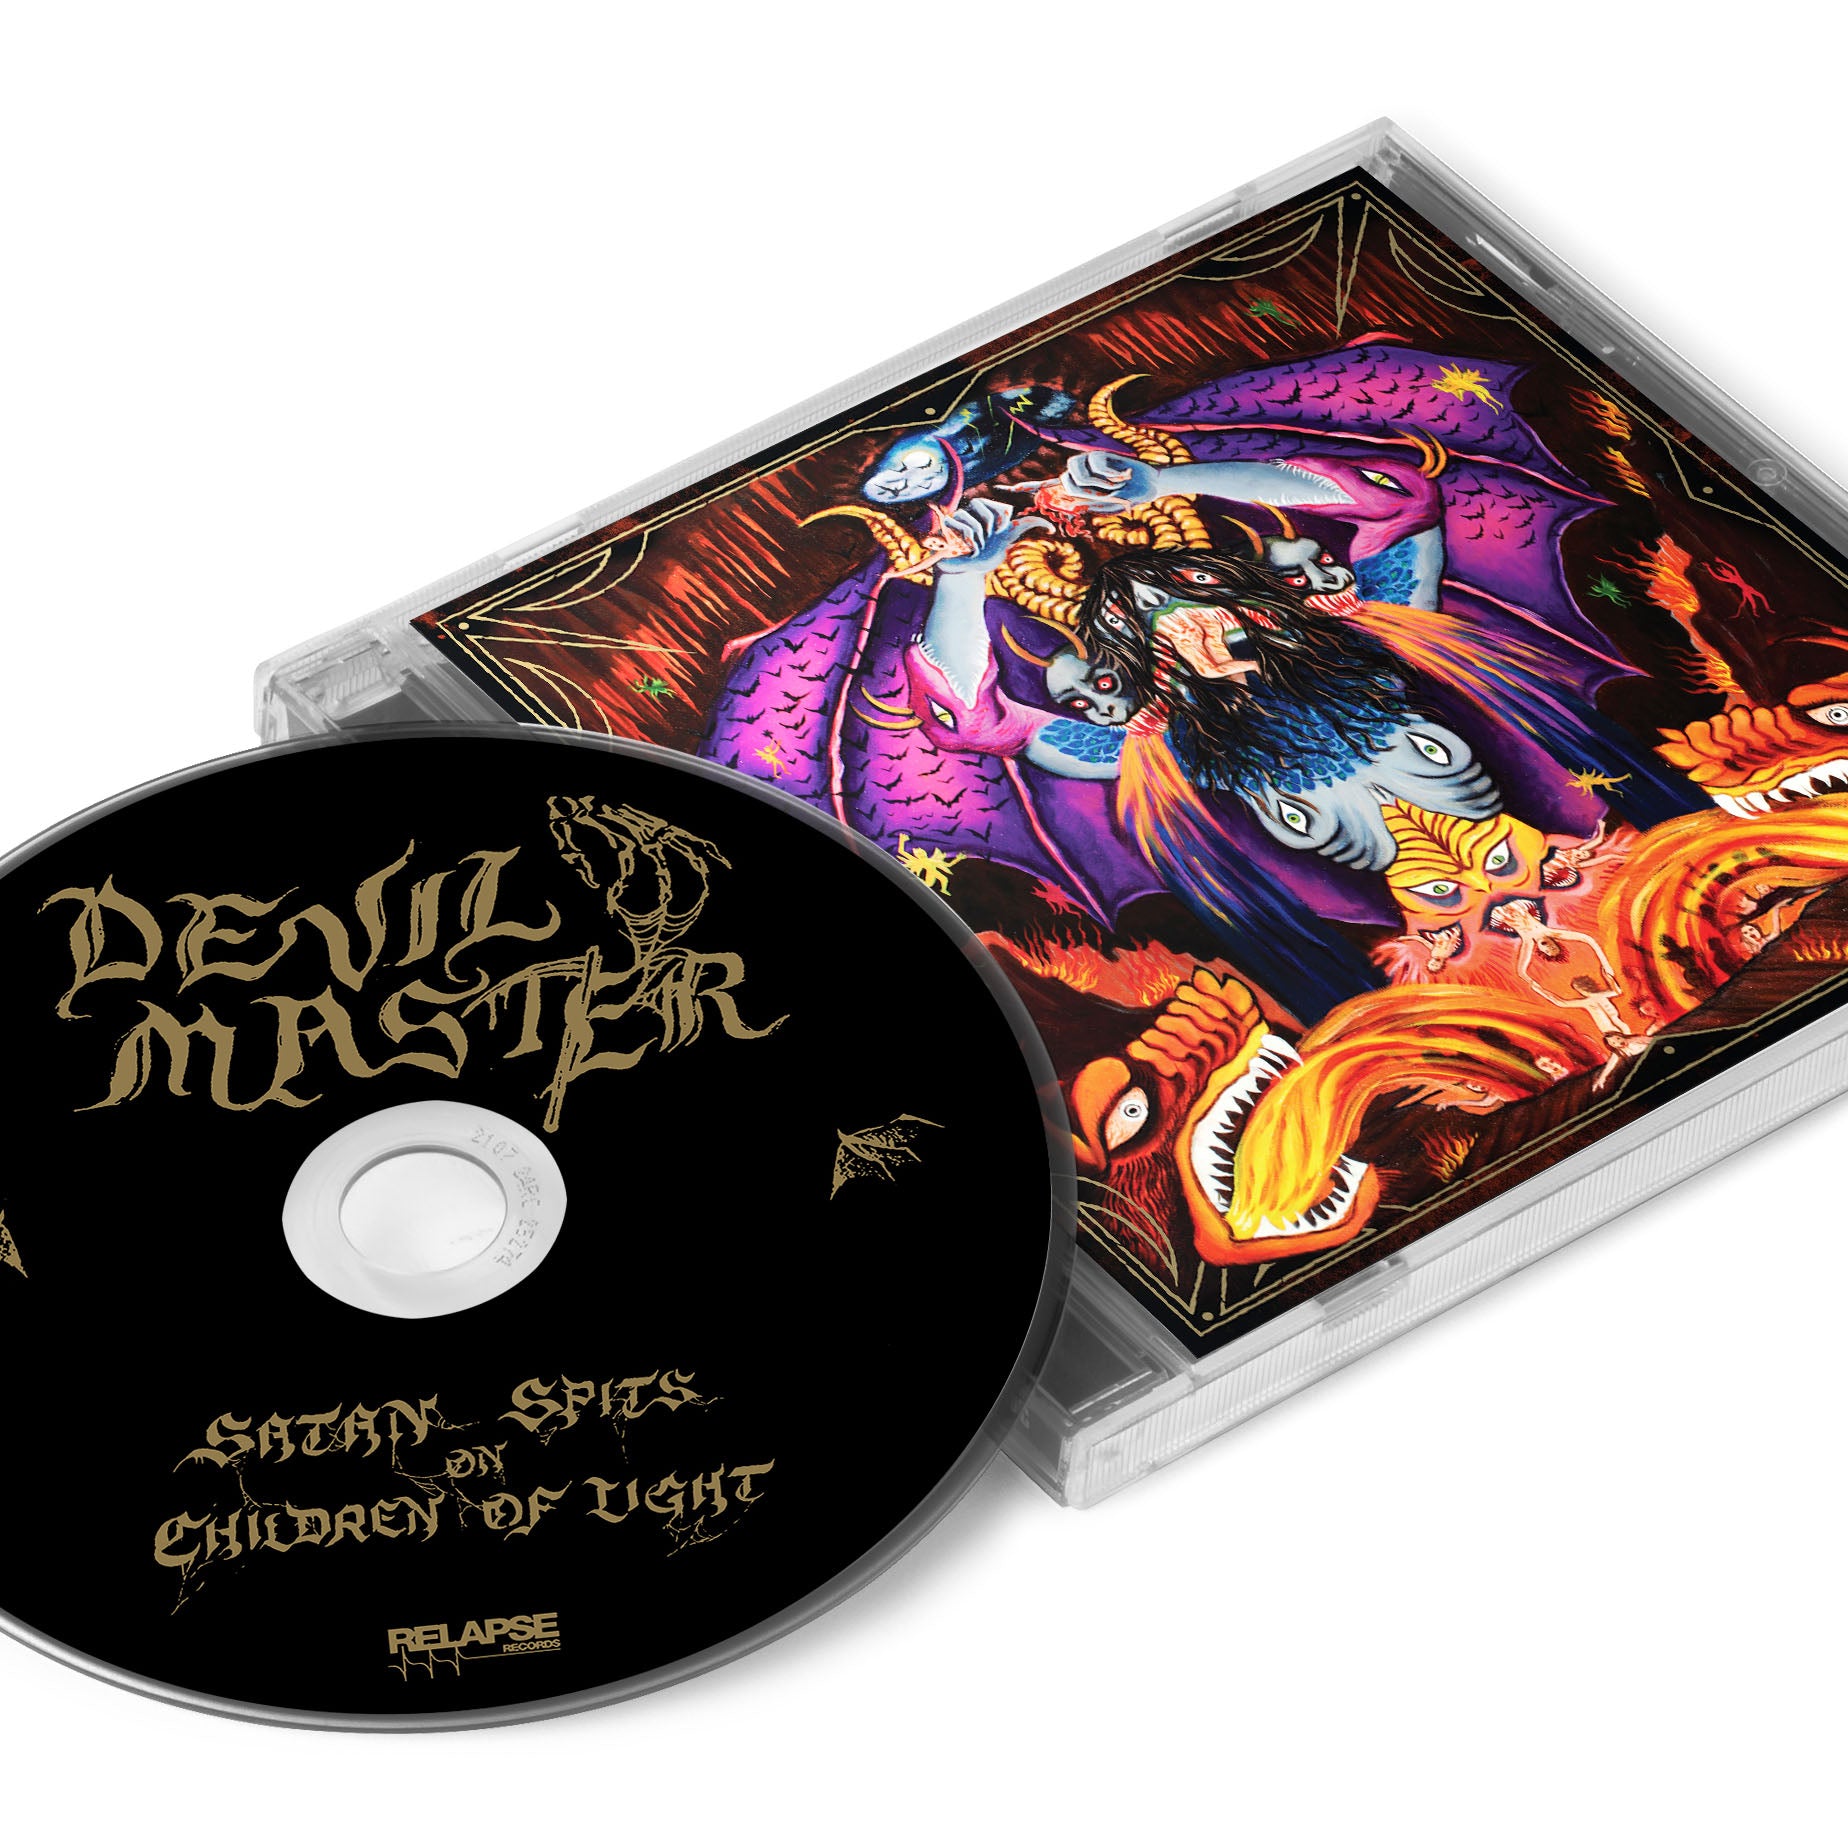 Devil Master "Satan Spits on Children of Light" CD